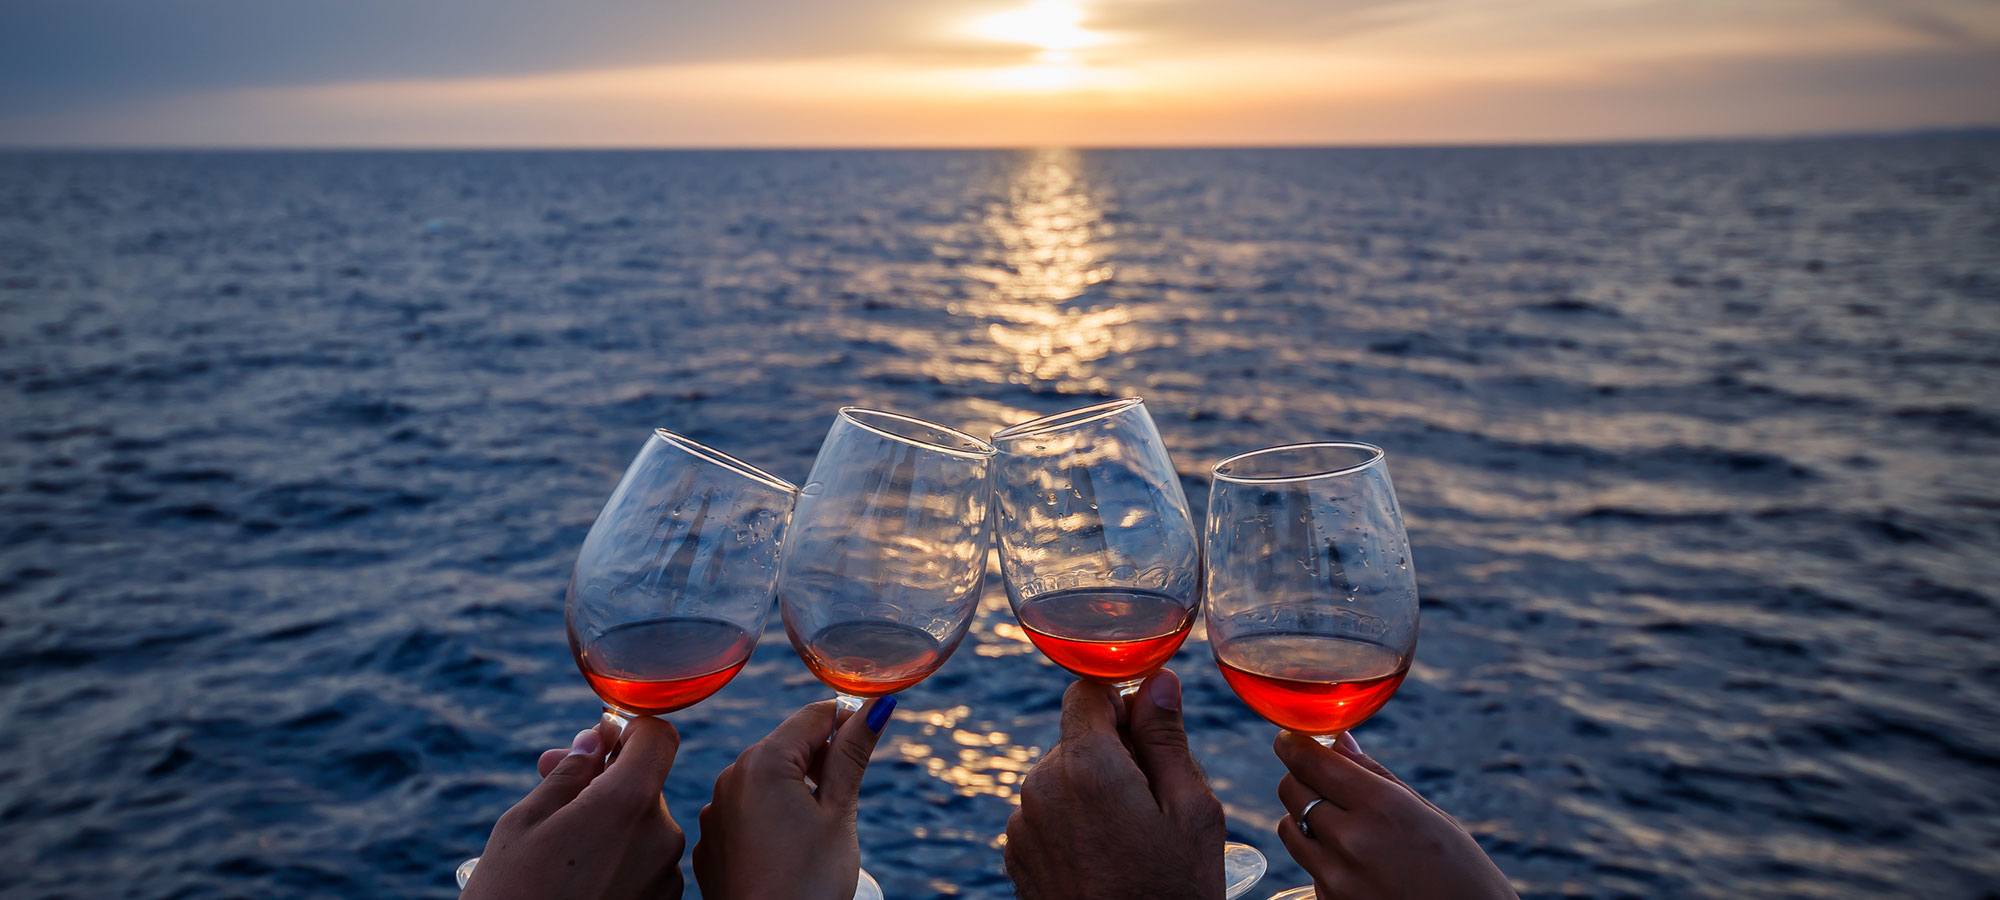 L’odissea del vino dell’adriatico, 1° parte: Dalmazia Centrale